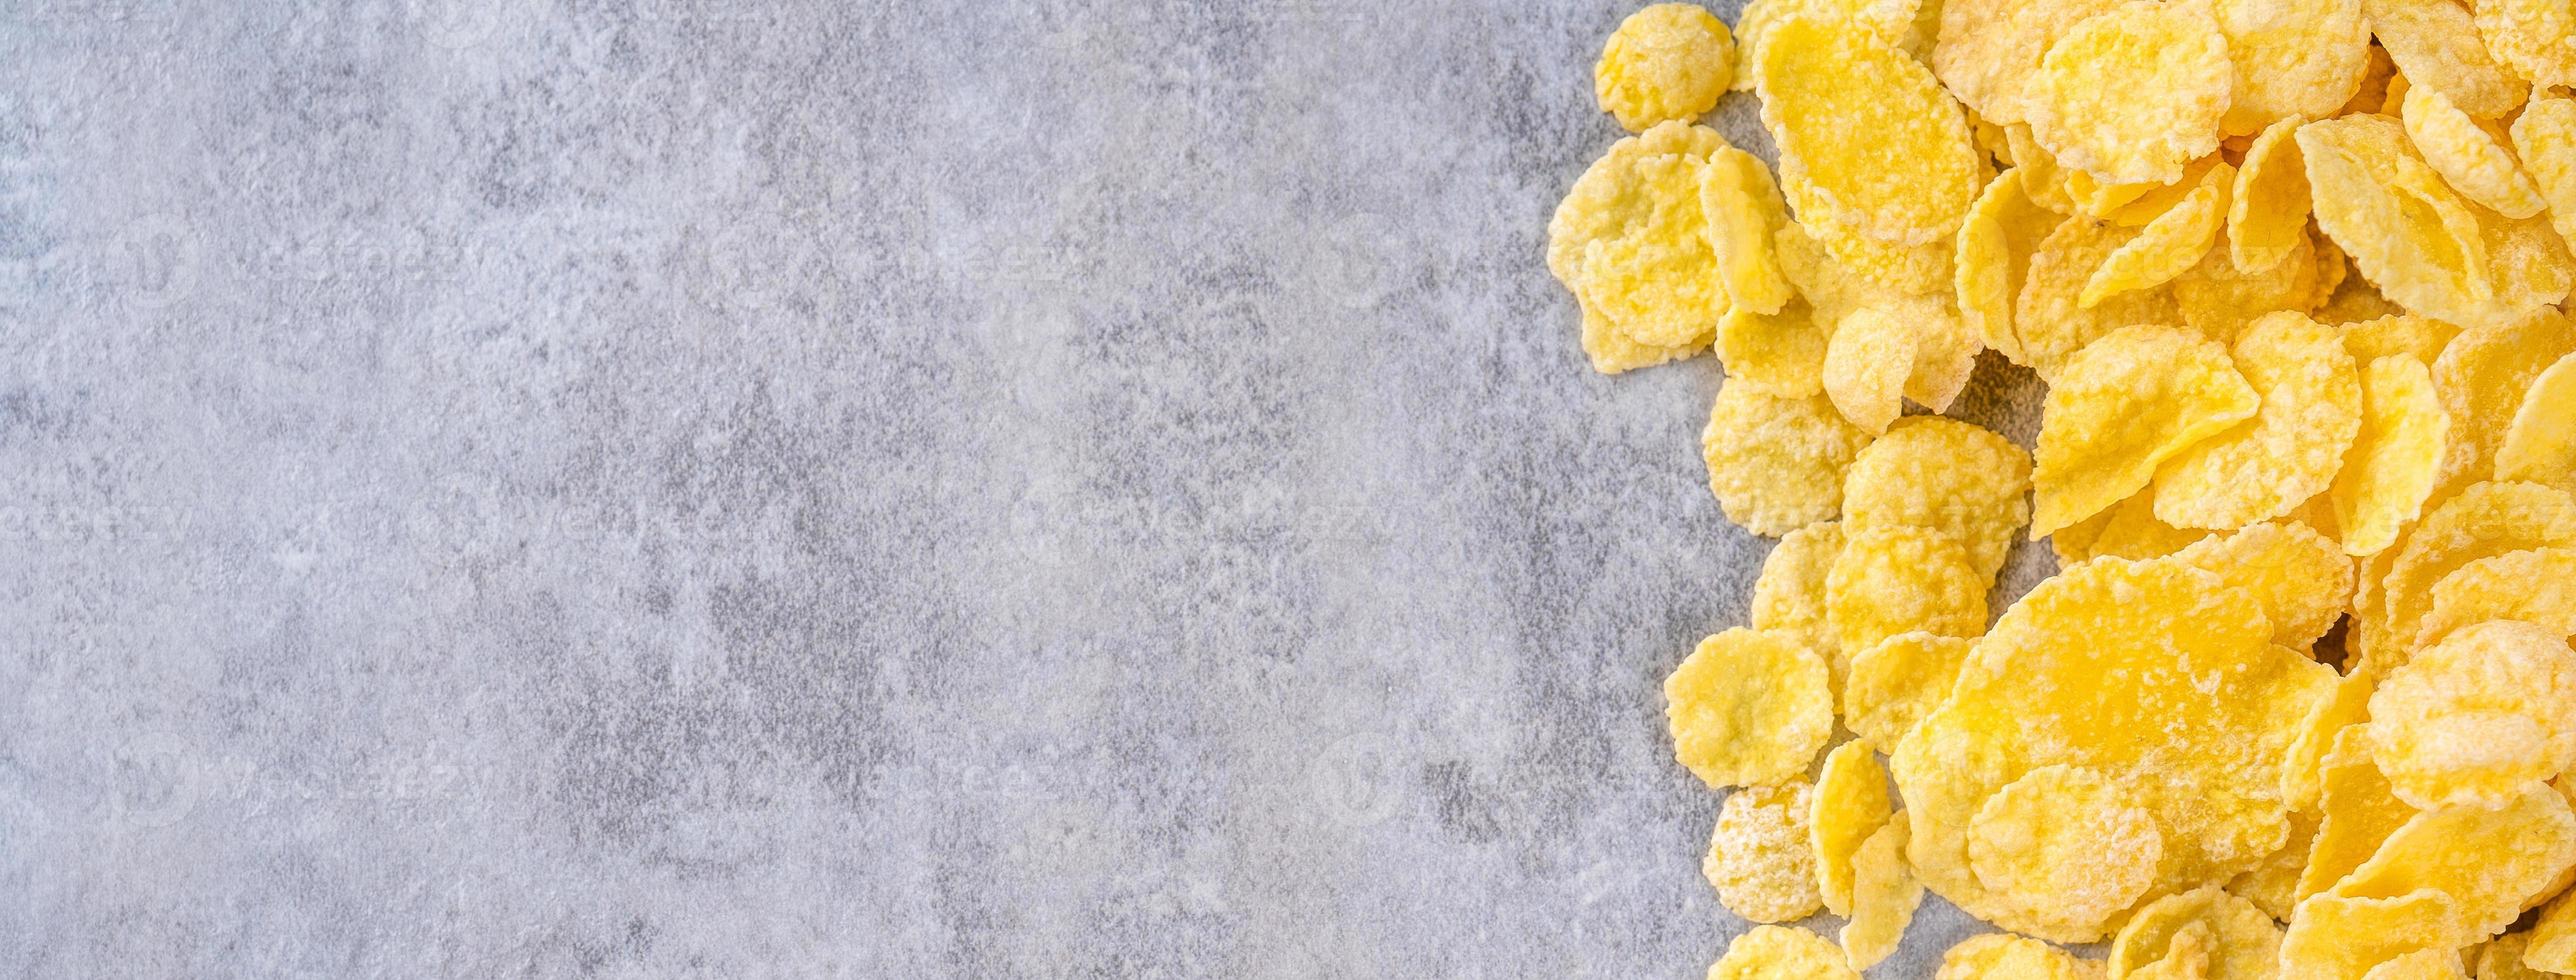 Ciotola di fiocchi di mais dolci su sfondo grigio di cemento, design piatto con vista dall'alto, concetto di colazione fresca e sana. foto